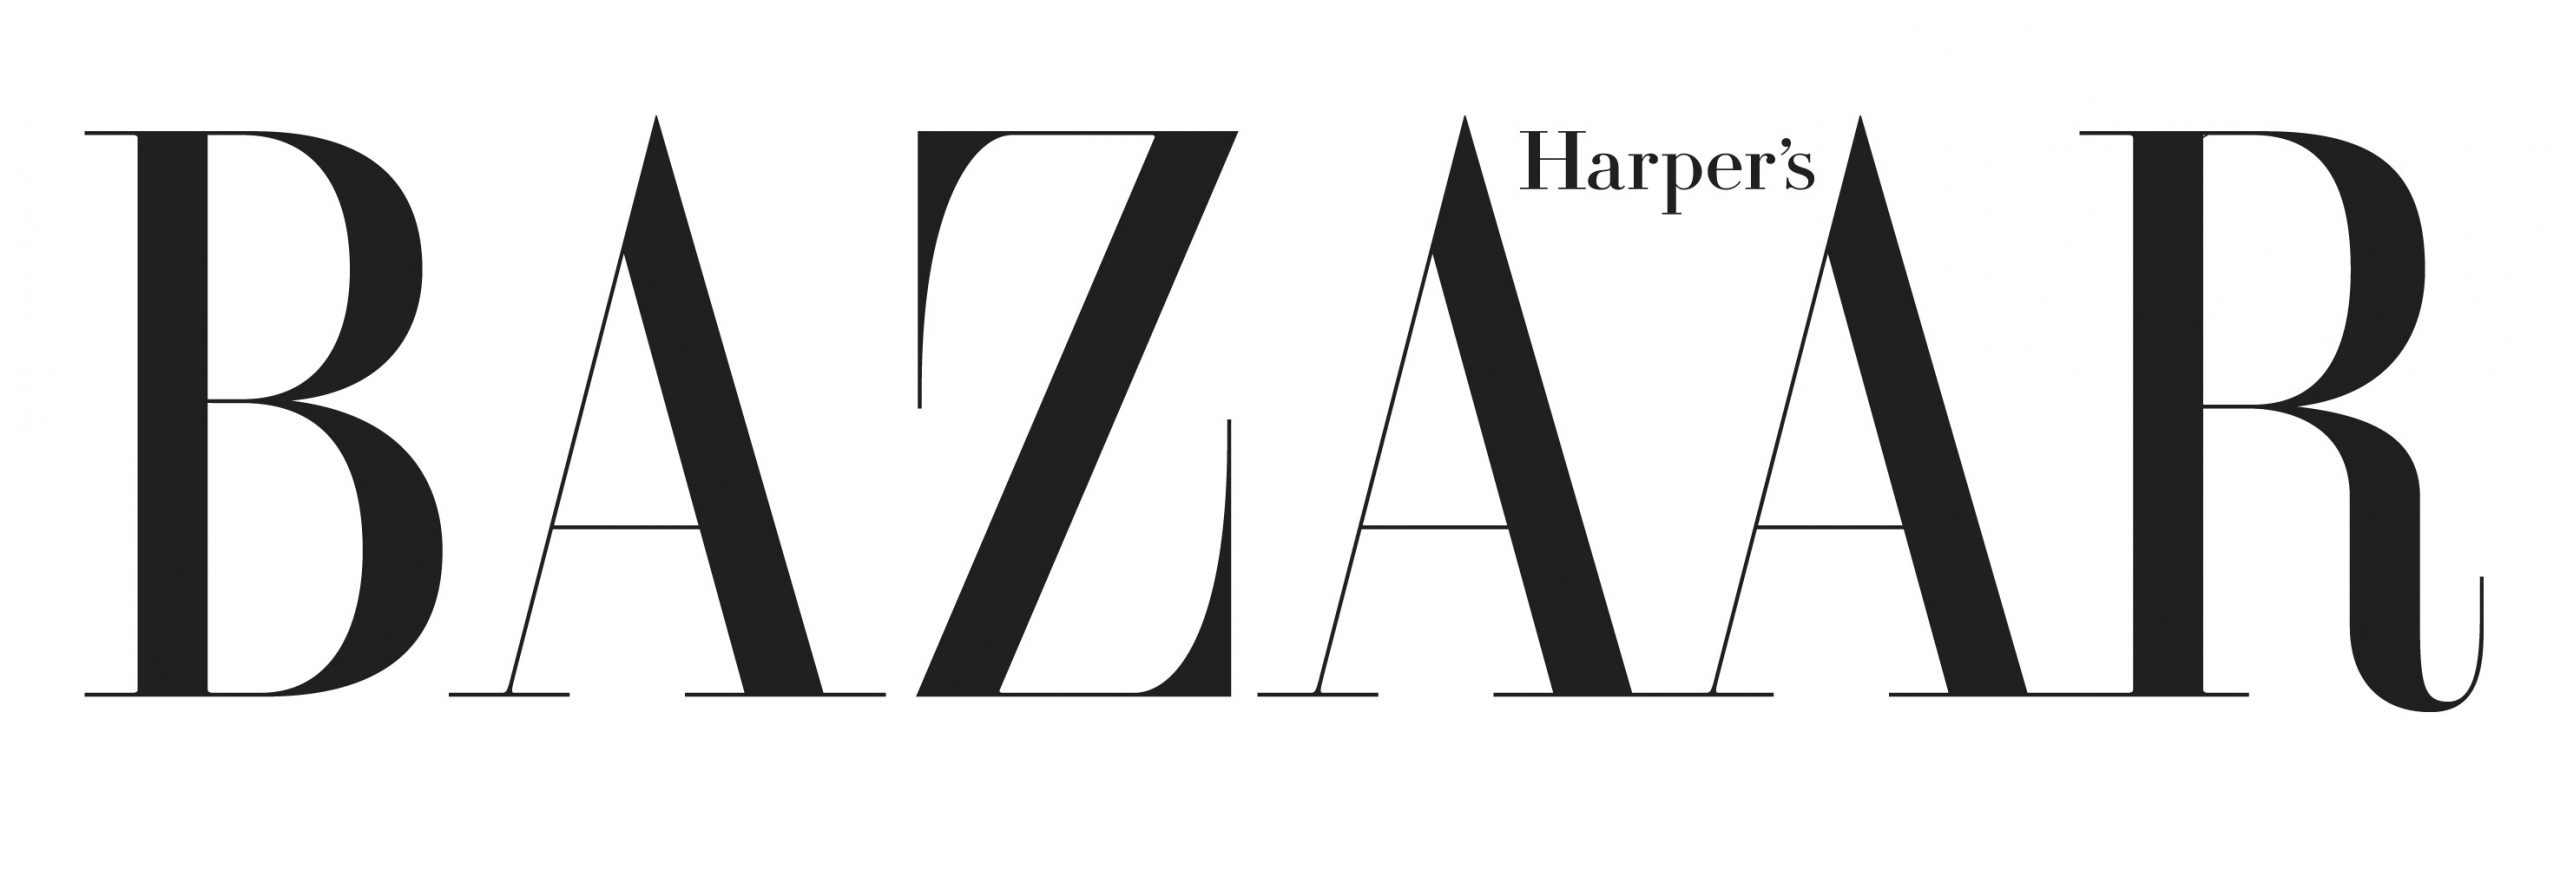 Harper_s_Bazaar_Logo